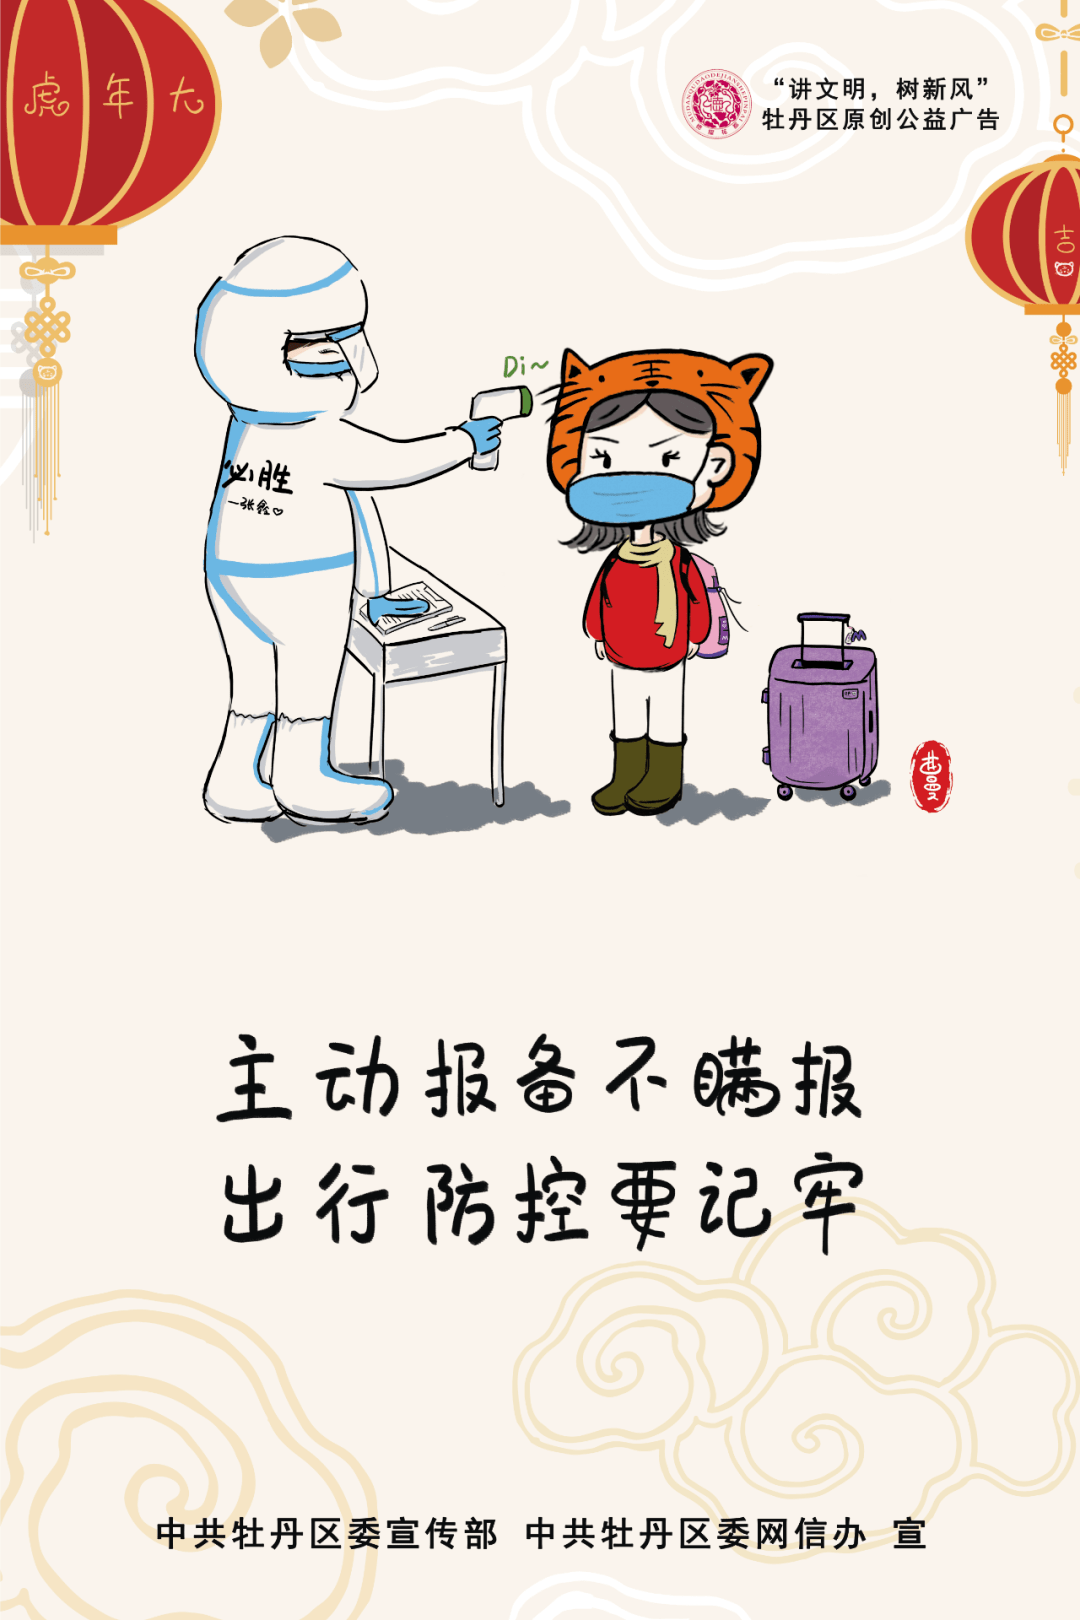 疫情防控宣传公益广告小曼妞说防疫系列原创漫画来啦